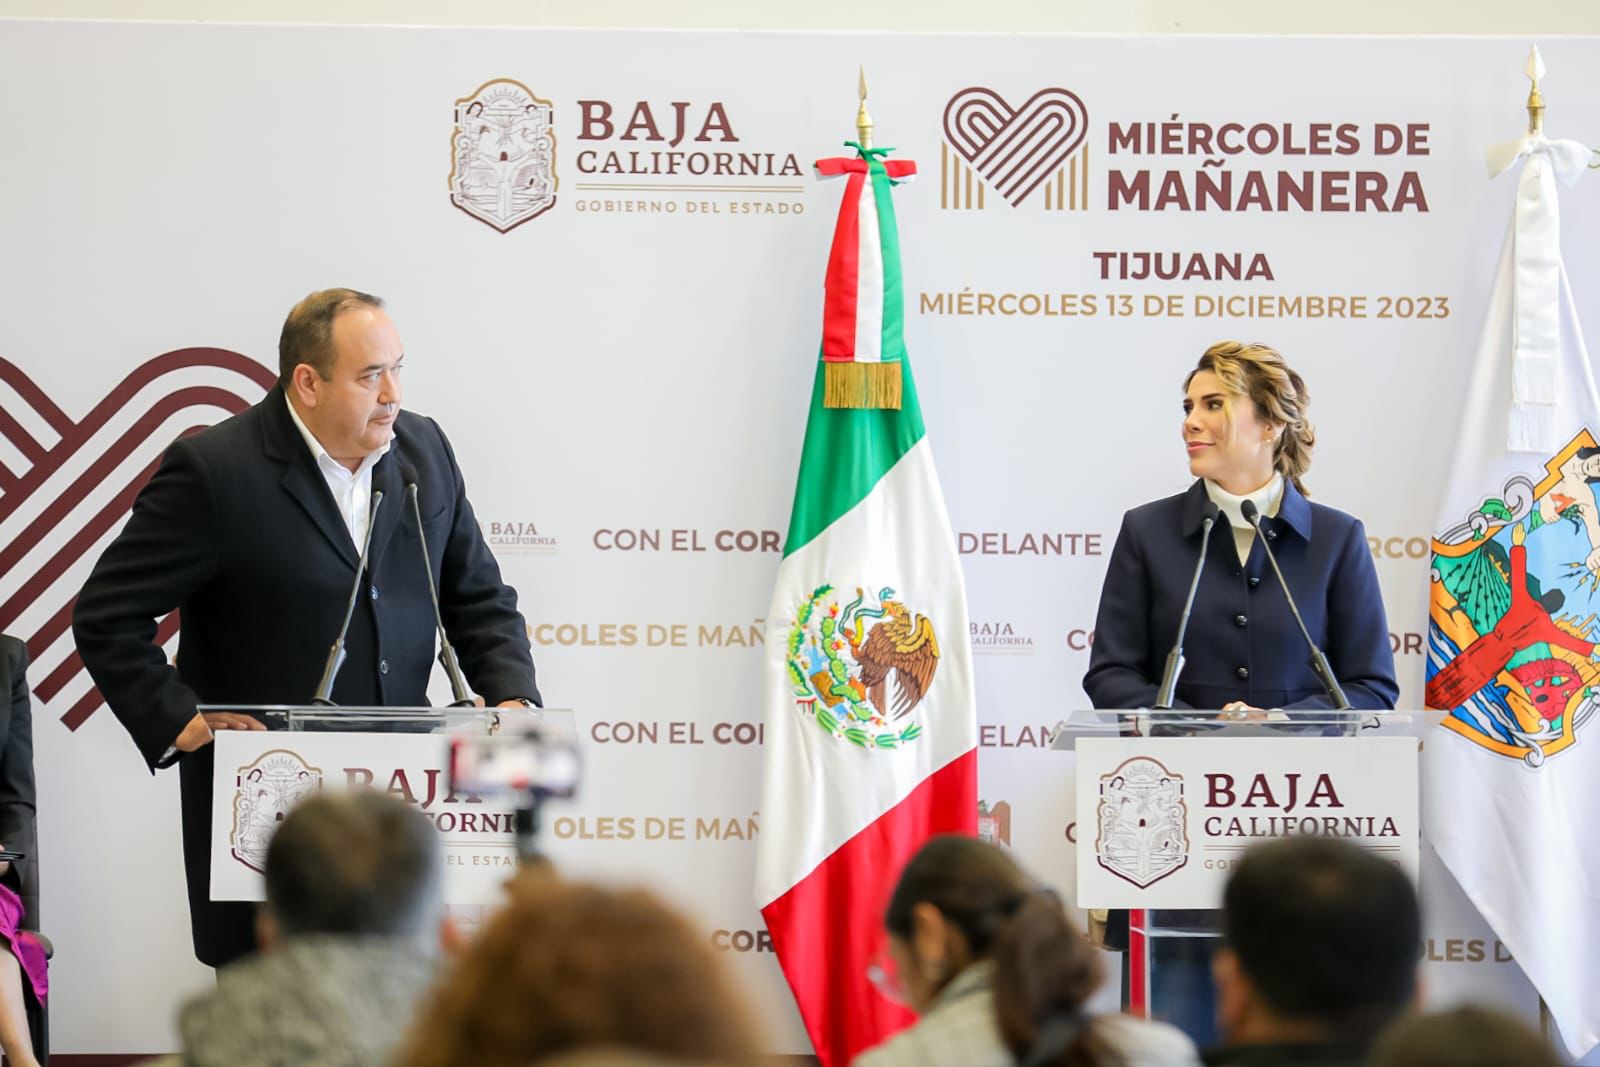 Marina del Pilar Ávila acuerda trabajar en mejorar aún más los derechos humanos en Baja California